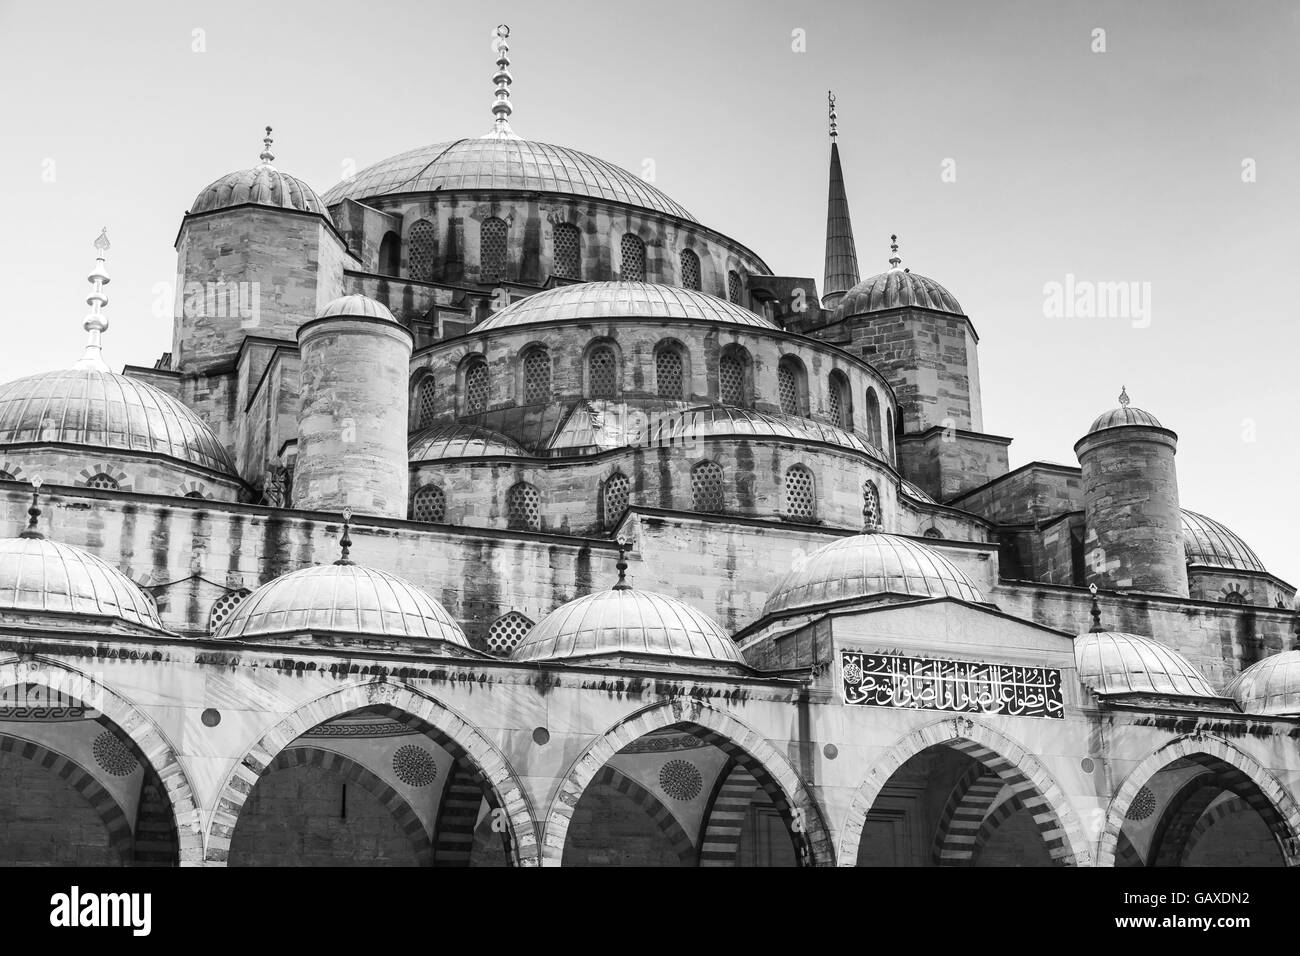 Façade de bleu ou Mosquée Sultan Ahmed, c'est une mosquée historique situé à Istanbul, en Turquie, l'un des monuments les plus populaires. Je Banque D'Images